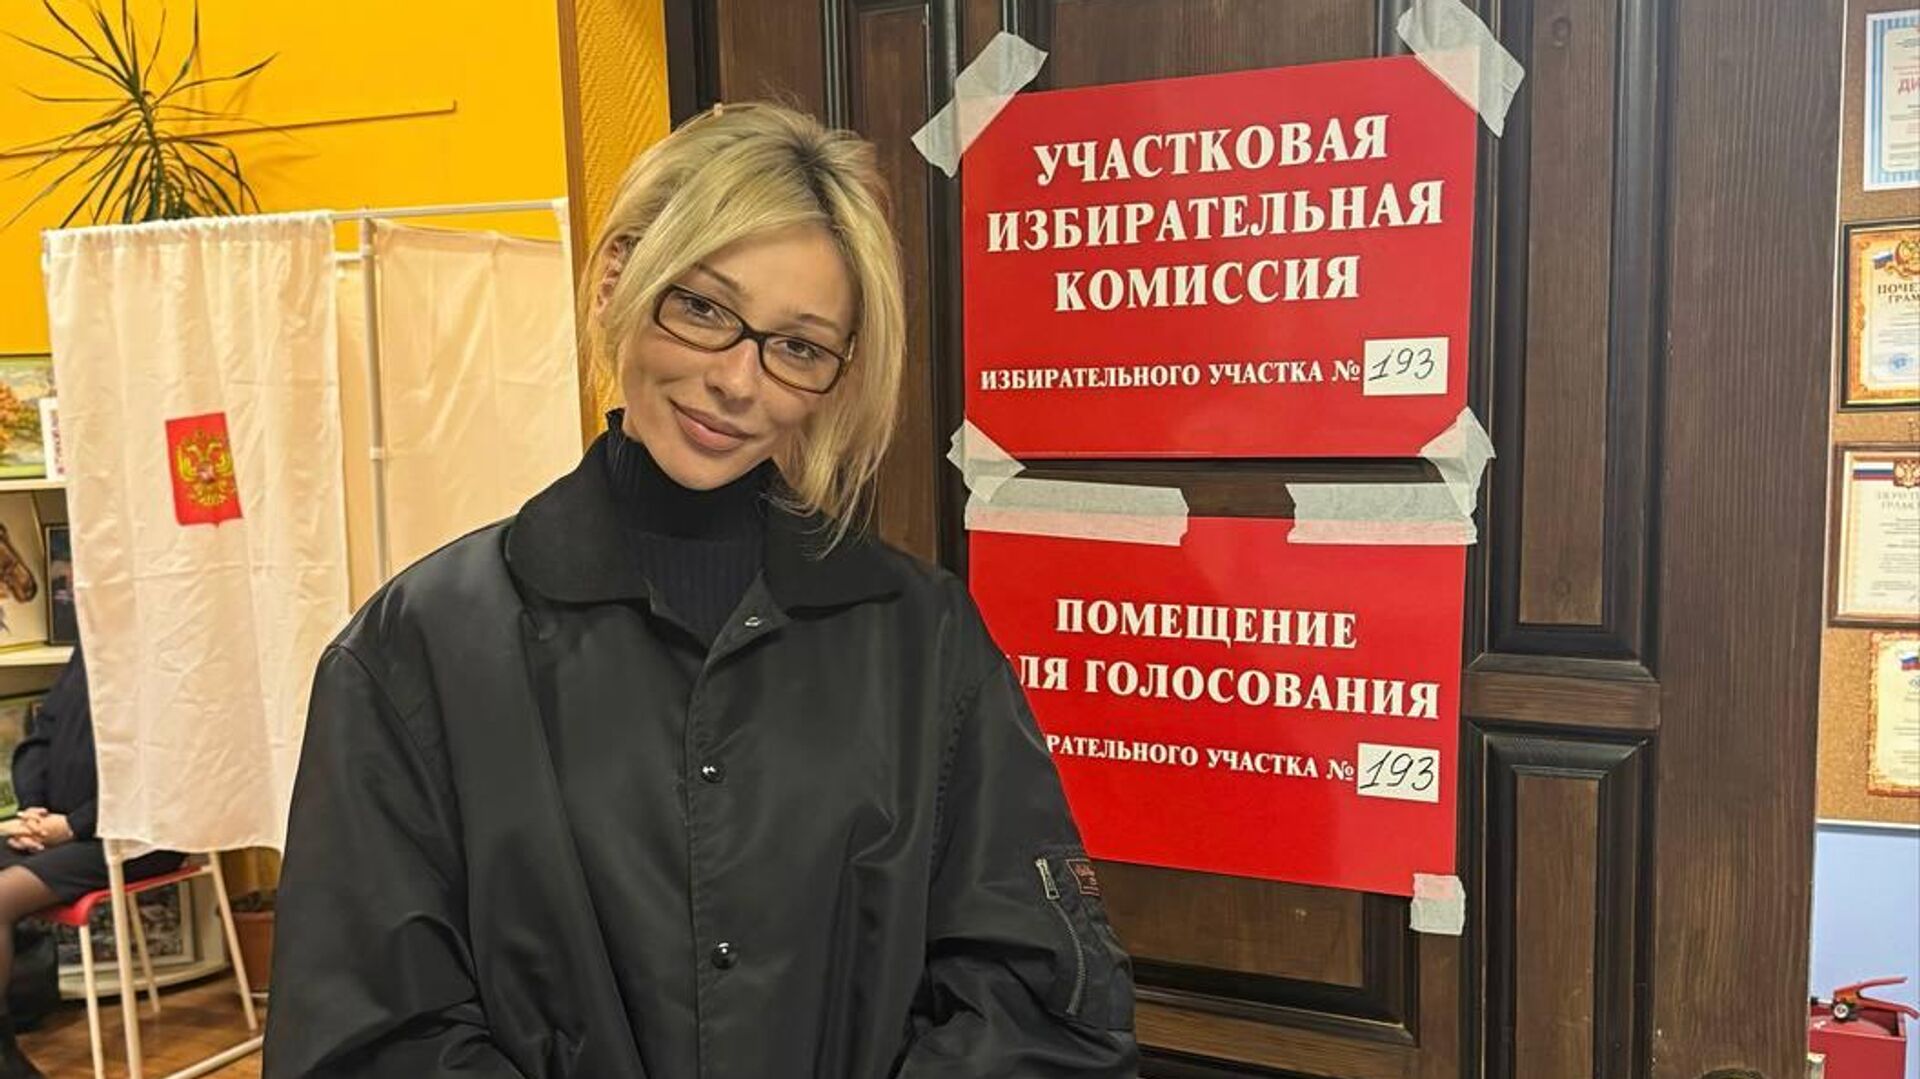 Блогер Анастасия Ивлеева проголосовала на выборах президента России